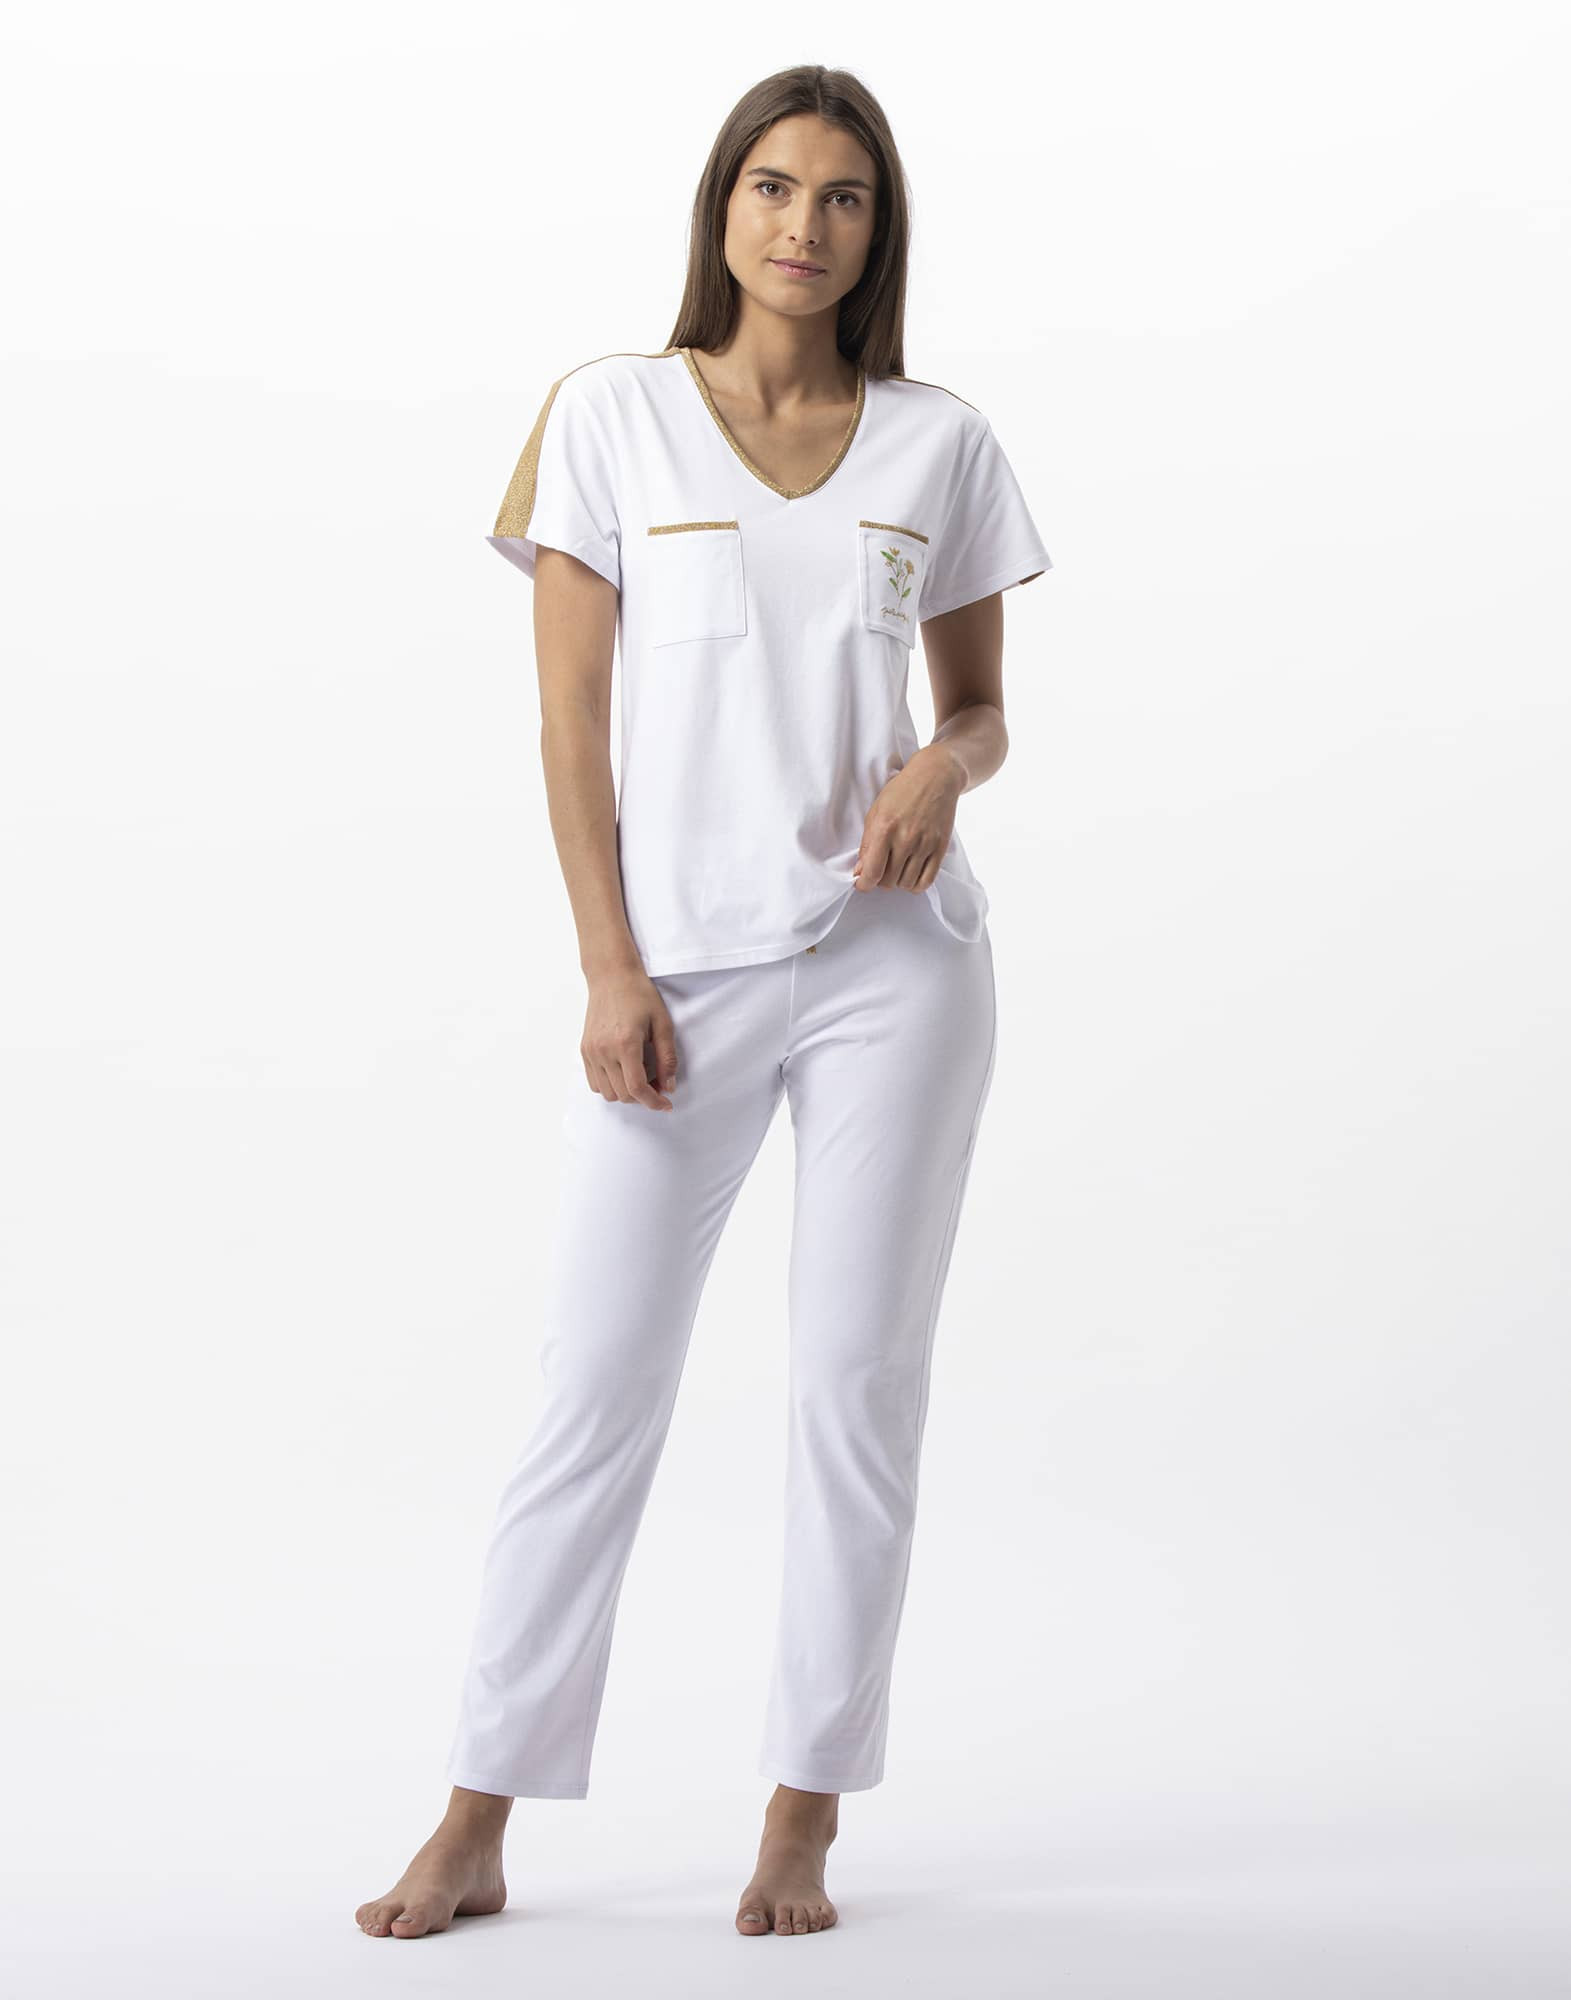 White silk pyjamas by MIRTO – 04491-0050